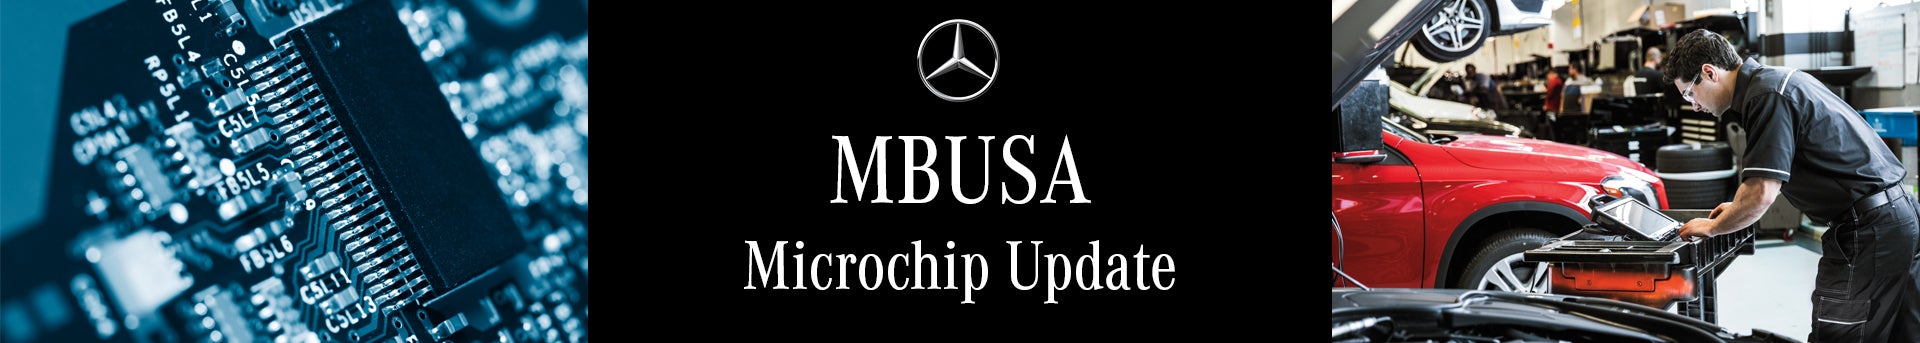 Mercedes-Benz MBUSA Microchip Update covid